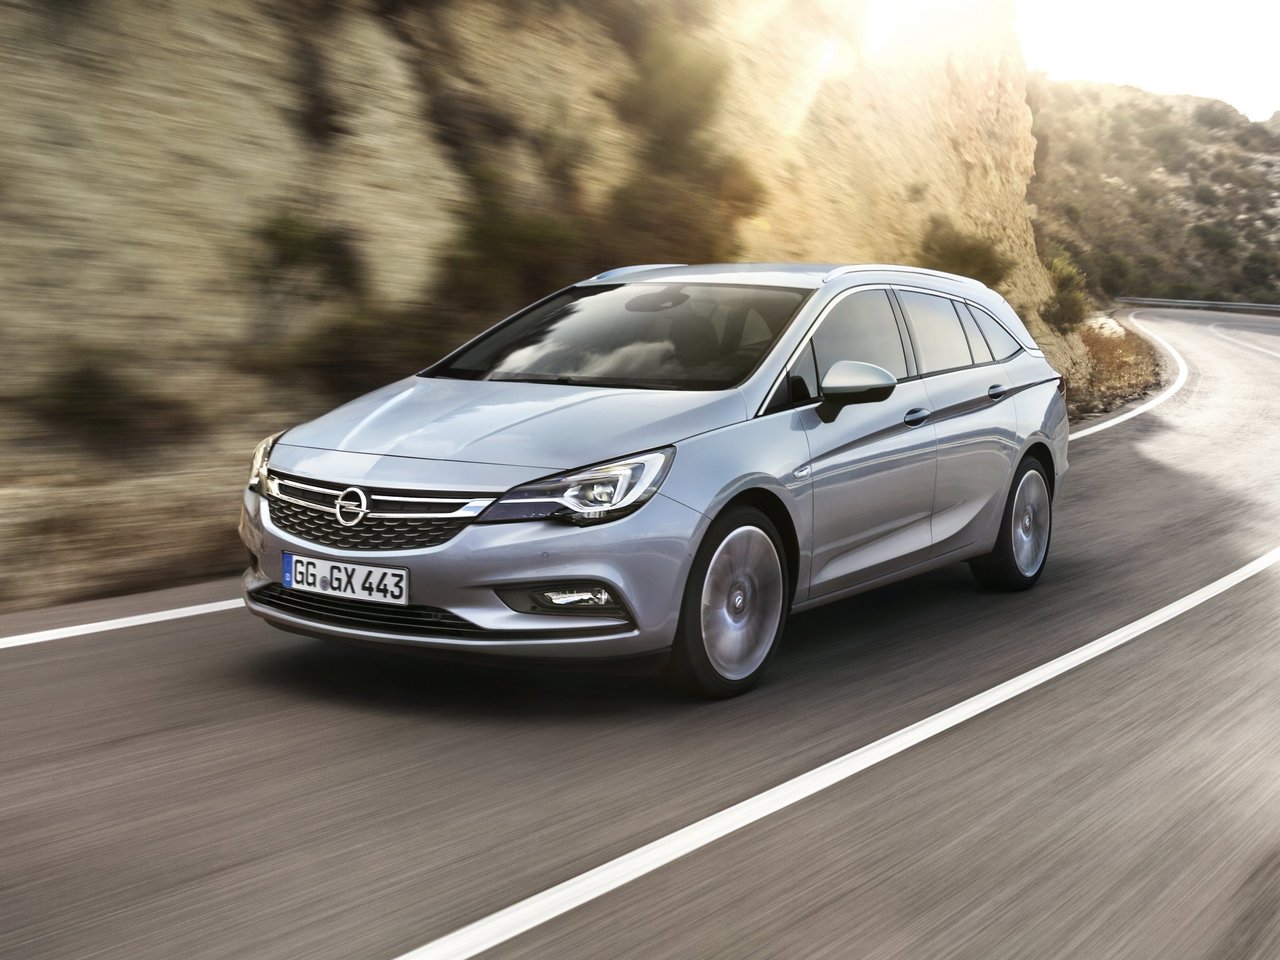 Расход газа пяти комплектаций универсала пять дверей Opel Astra. Разница стоимости заправки газом и бензином. Автономный пробег до и после установки ГБО.